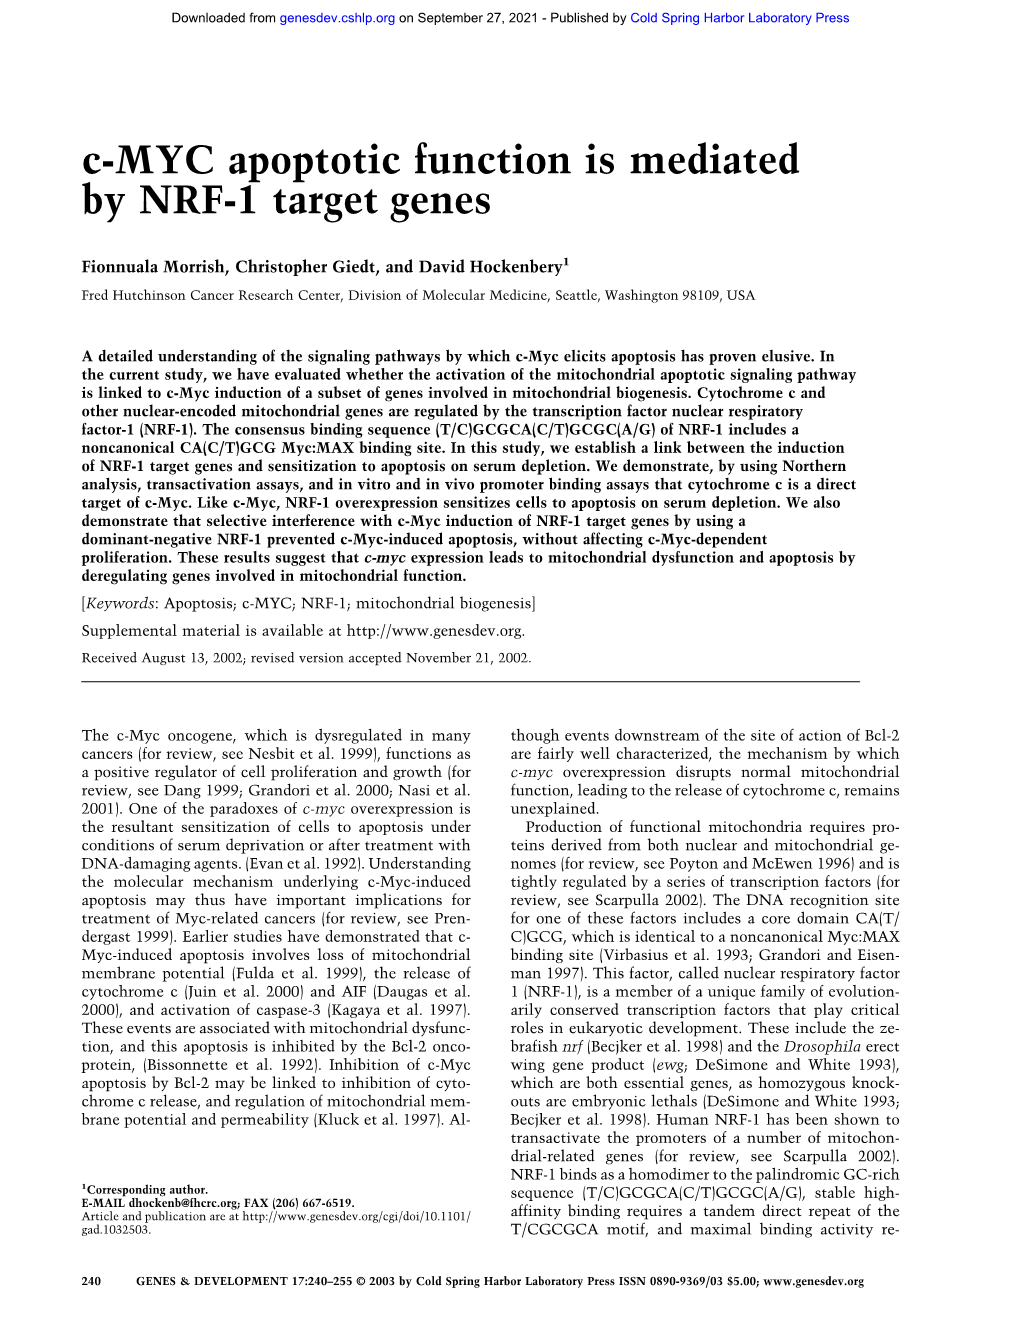 C-MYC Apoptotic Function Is Mediated by NRF-1 Target Genes